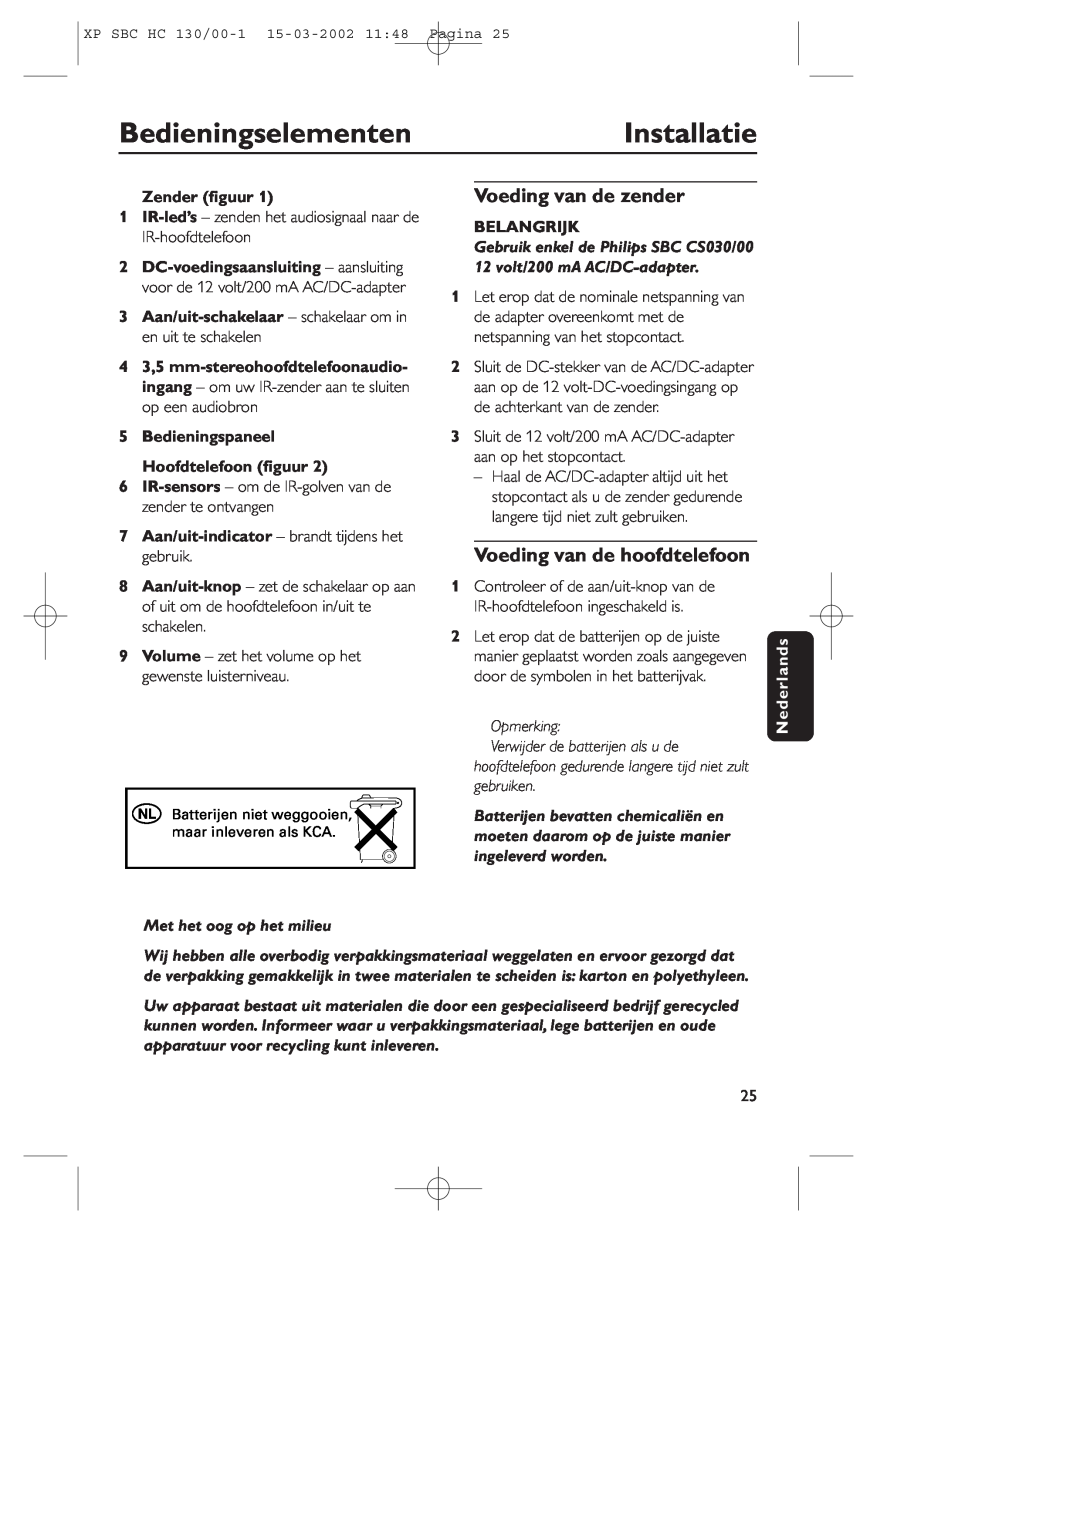 Philips SBC HC130 manual BedieningselementenInstallatie, Voeding van de zender, Voeding van de hoofdtelefoon, Zender ﬁguur 